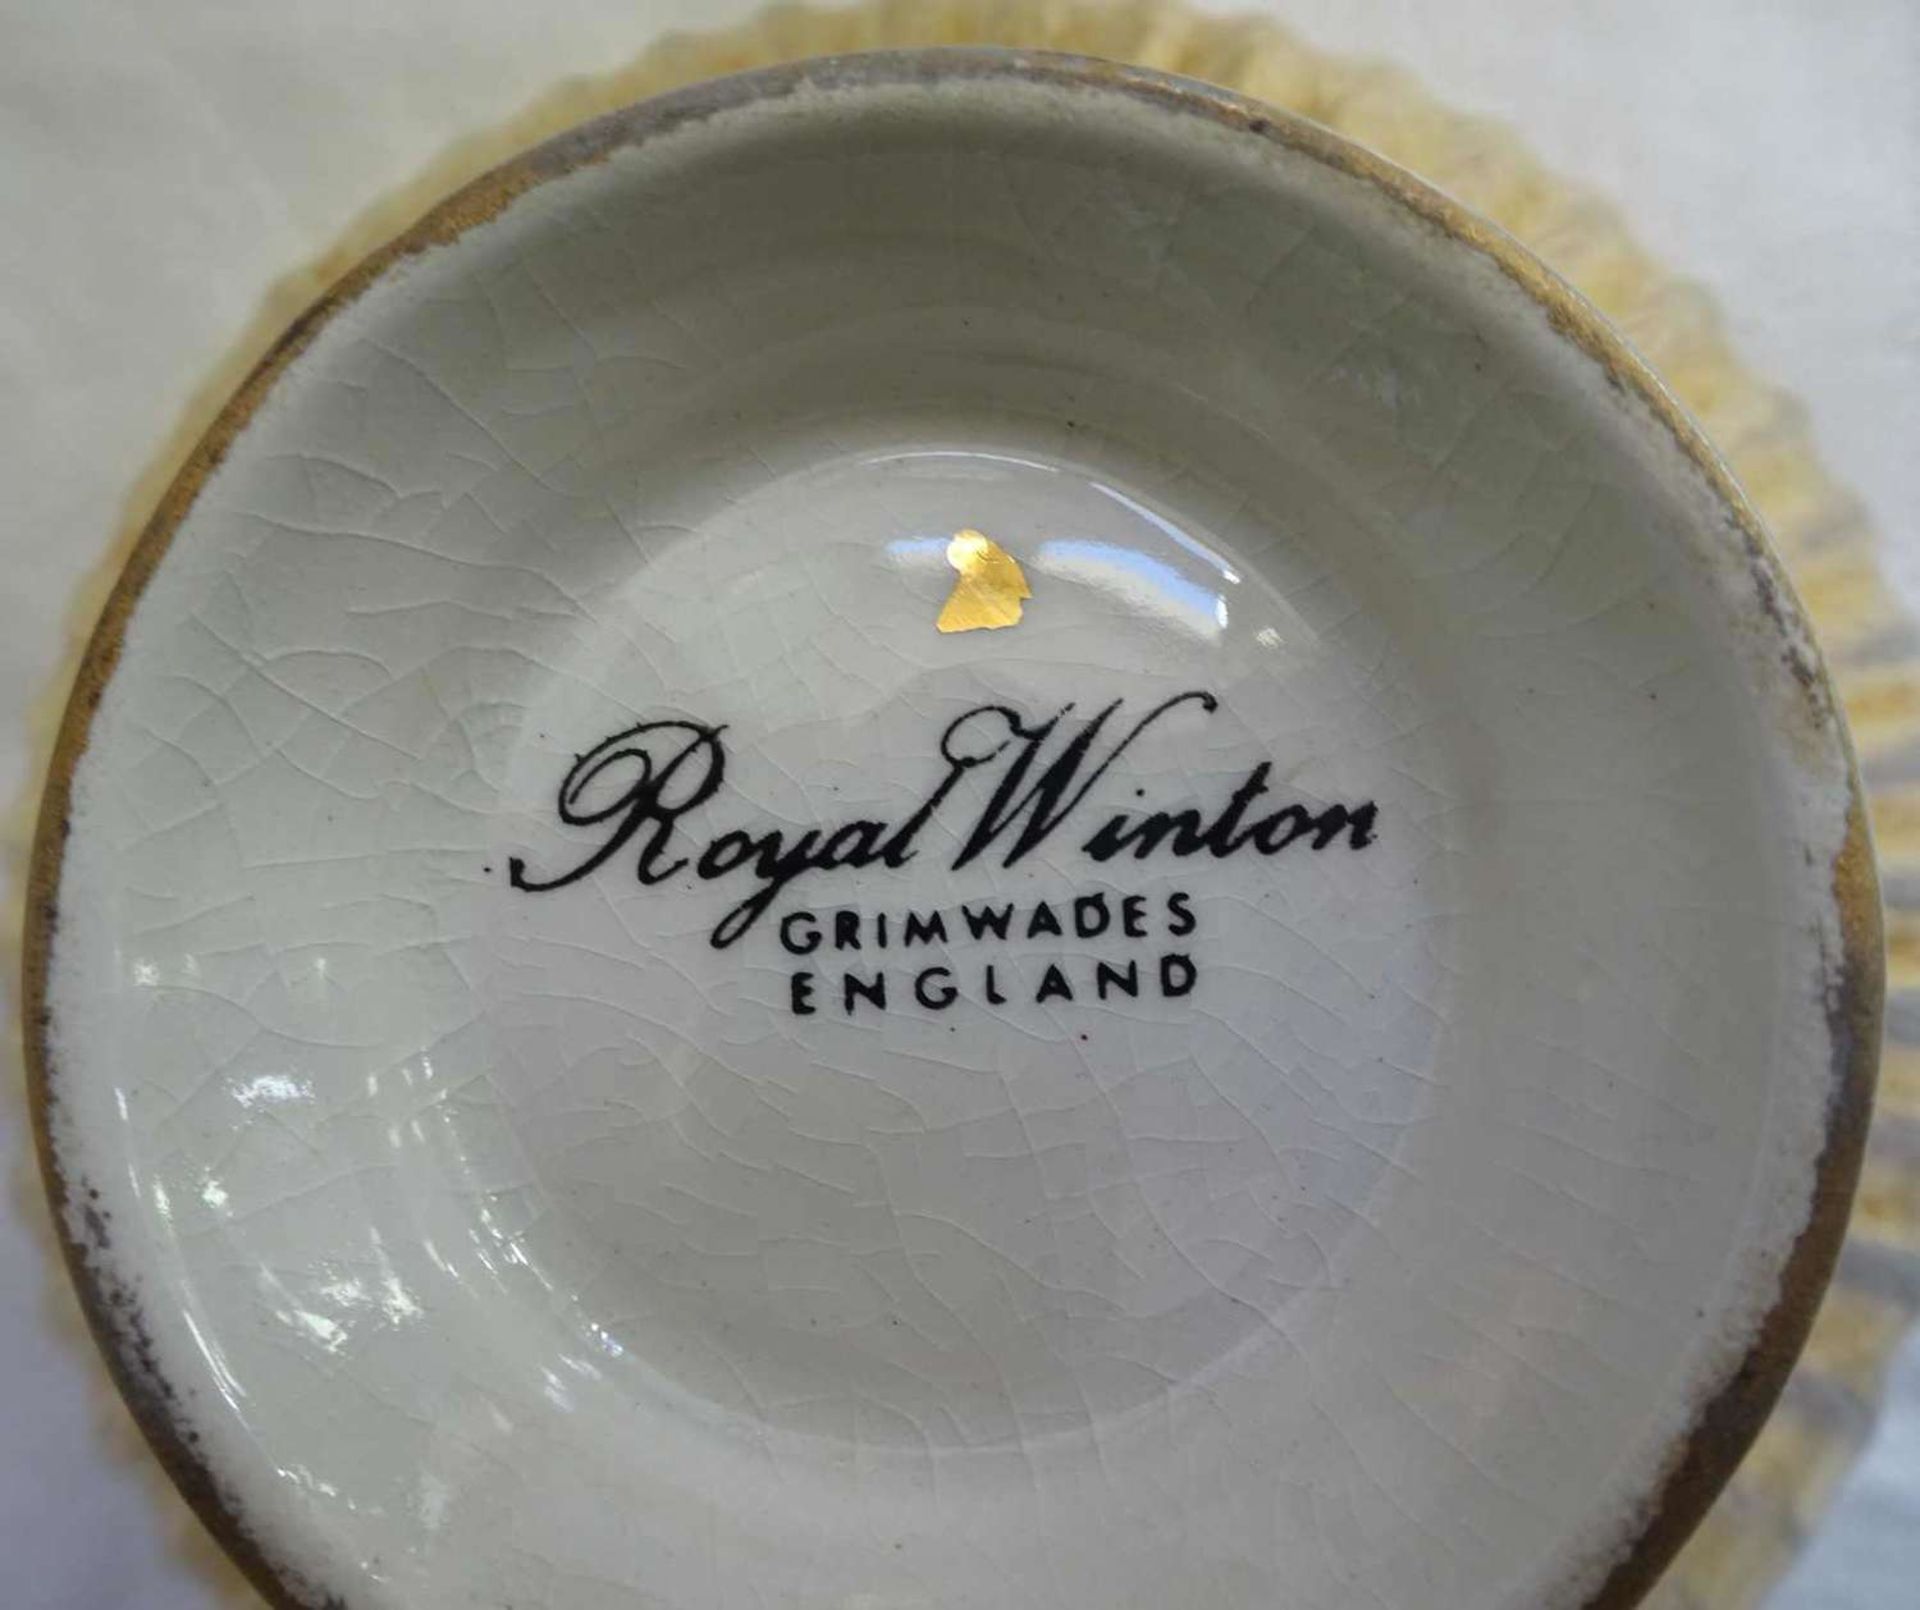 Porzellan Kaffeekern vergoldet, Hersteller Royal Winton Grimwades England. Sehr guter Zustand. - Bild 2 aus 3